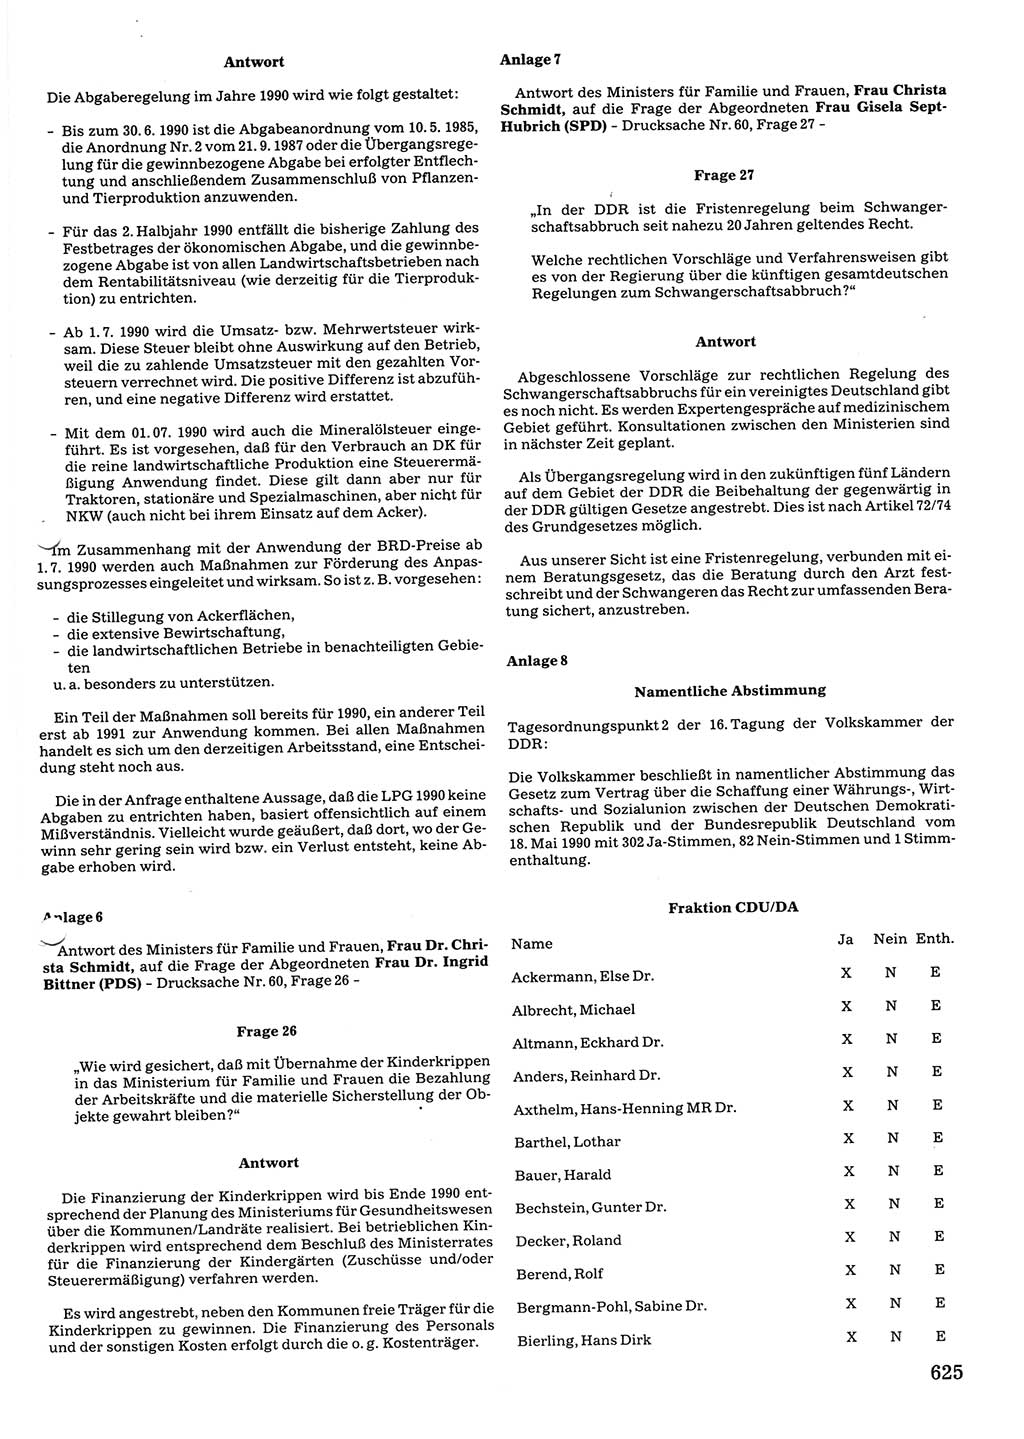 Tagungen der Volkskammer (VK) der Deutschen Demokratischen Republik (DDR), 10. Wahlperiode 1990, Seite 625 (VK. DDR 10. WP. 1990, Prot. Tg. 1-38, 5.4.-2.10.1990, S. 625)